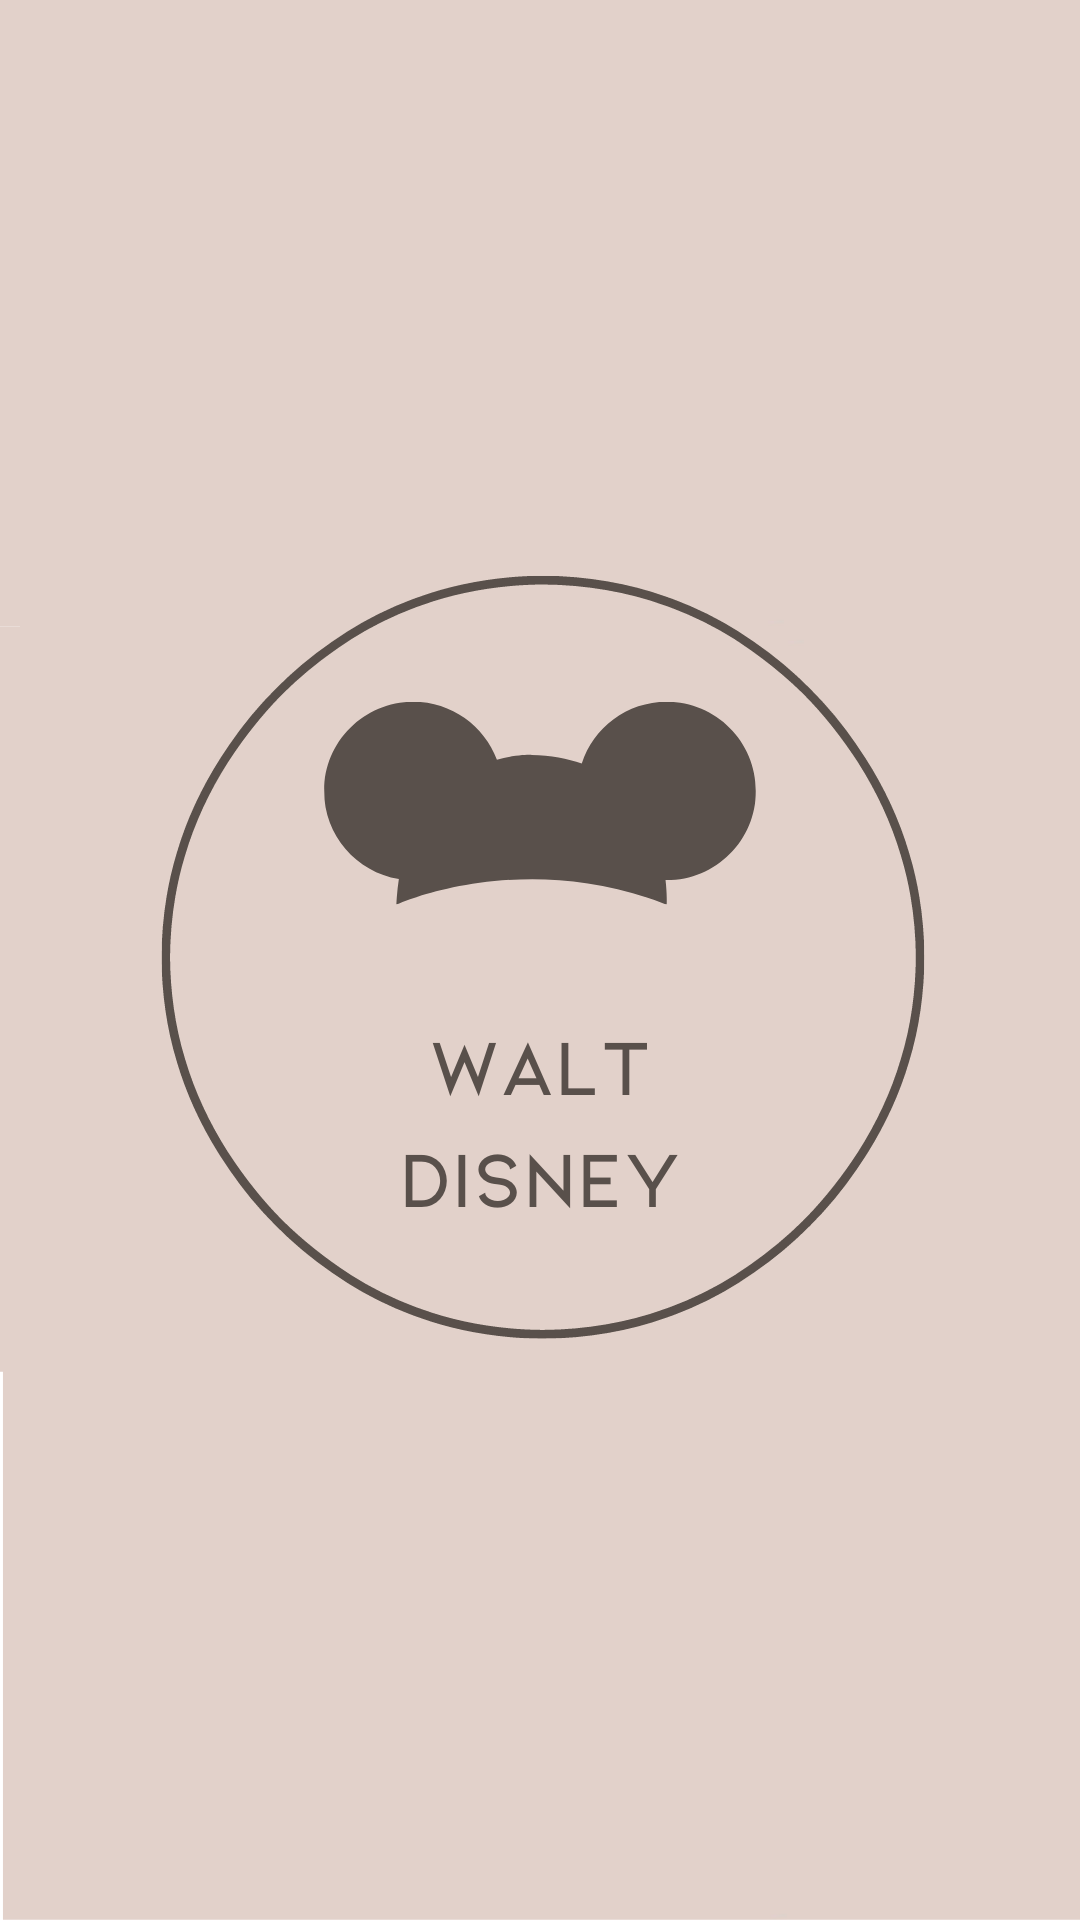 Walt Disney Letter - Entrepreneur